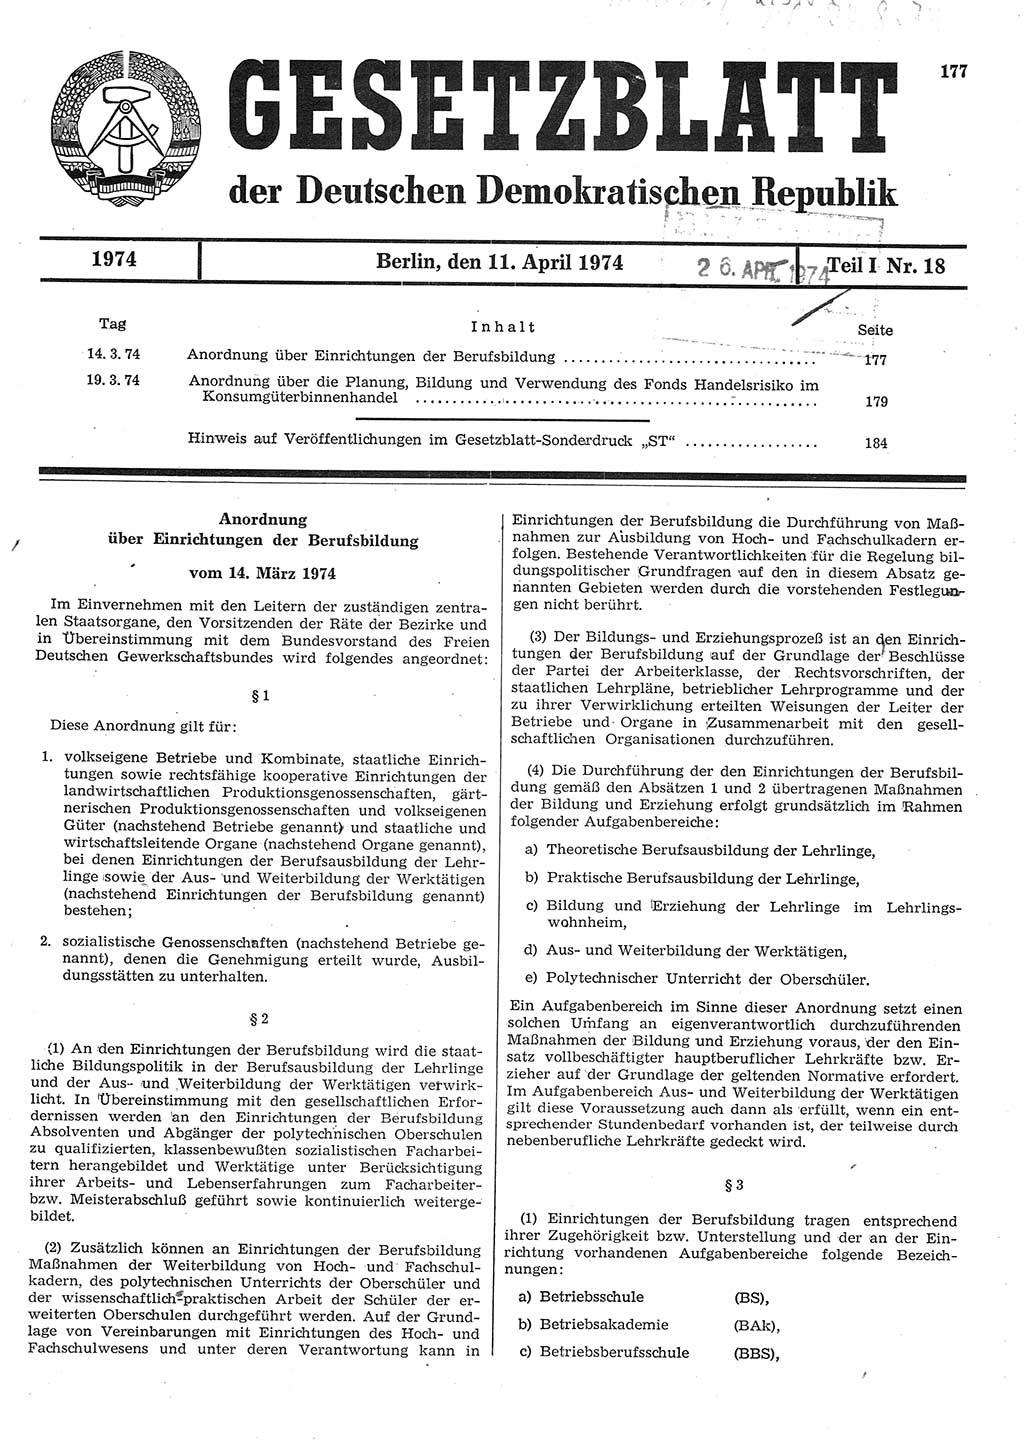 Gesetzblatt (GBl.) der Deutschen Demokratischen Republik (DDR) Teil Ⅰ 1974, Seite 177 (GBl. DDR Ⅰ 1974, S. 177)